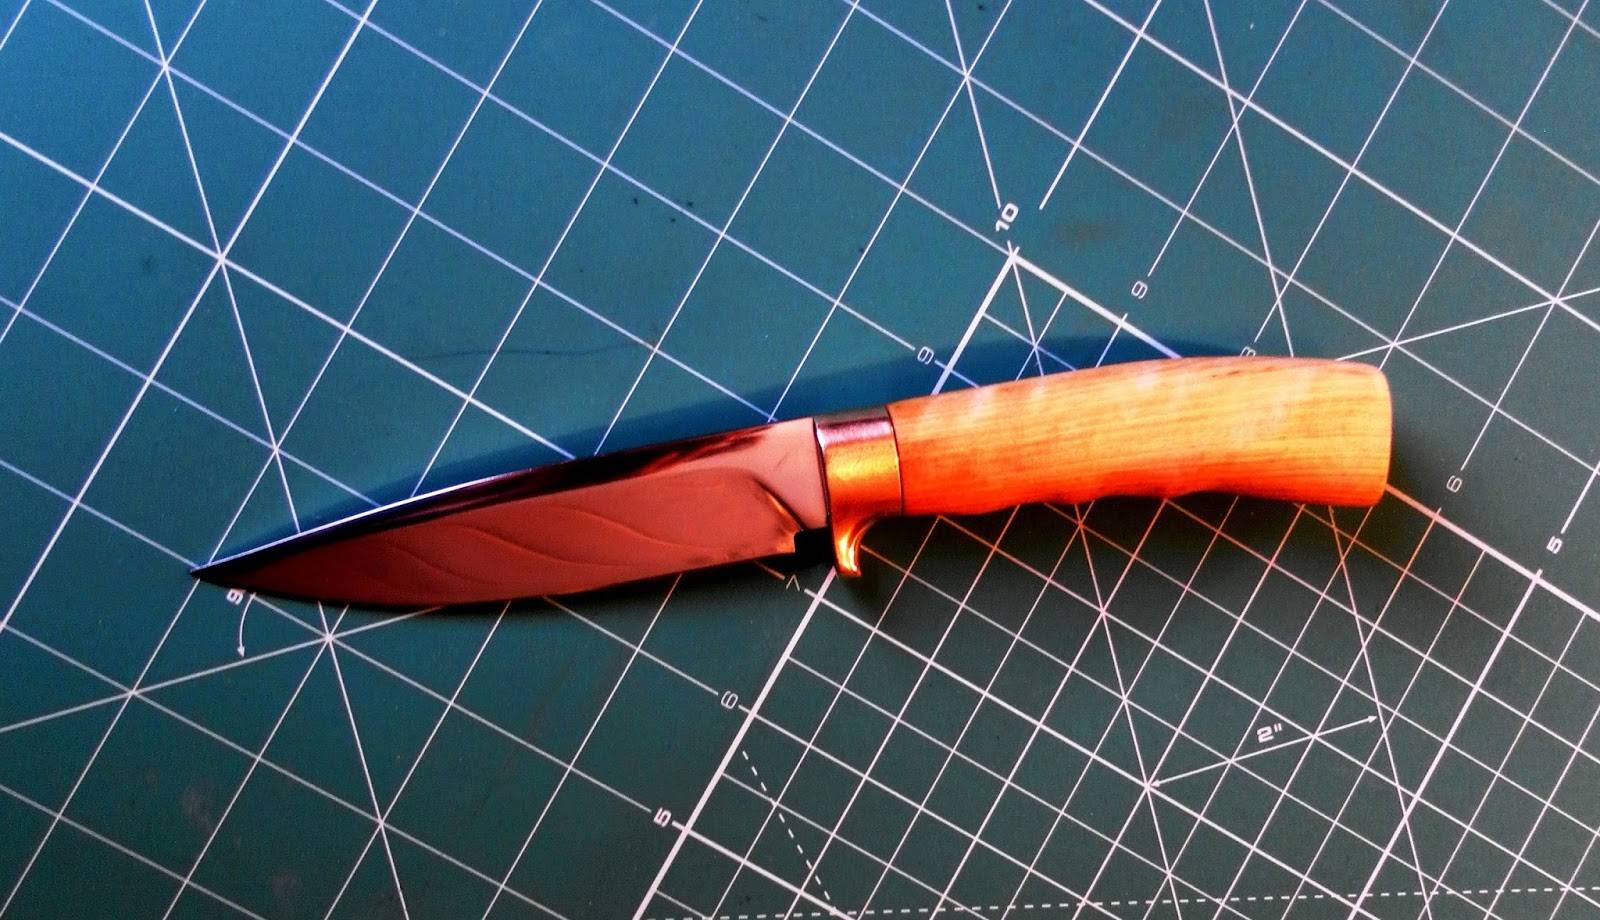 Изготовление ножей своими руками в домашних условиях. простейший качественный нож своими руками